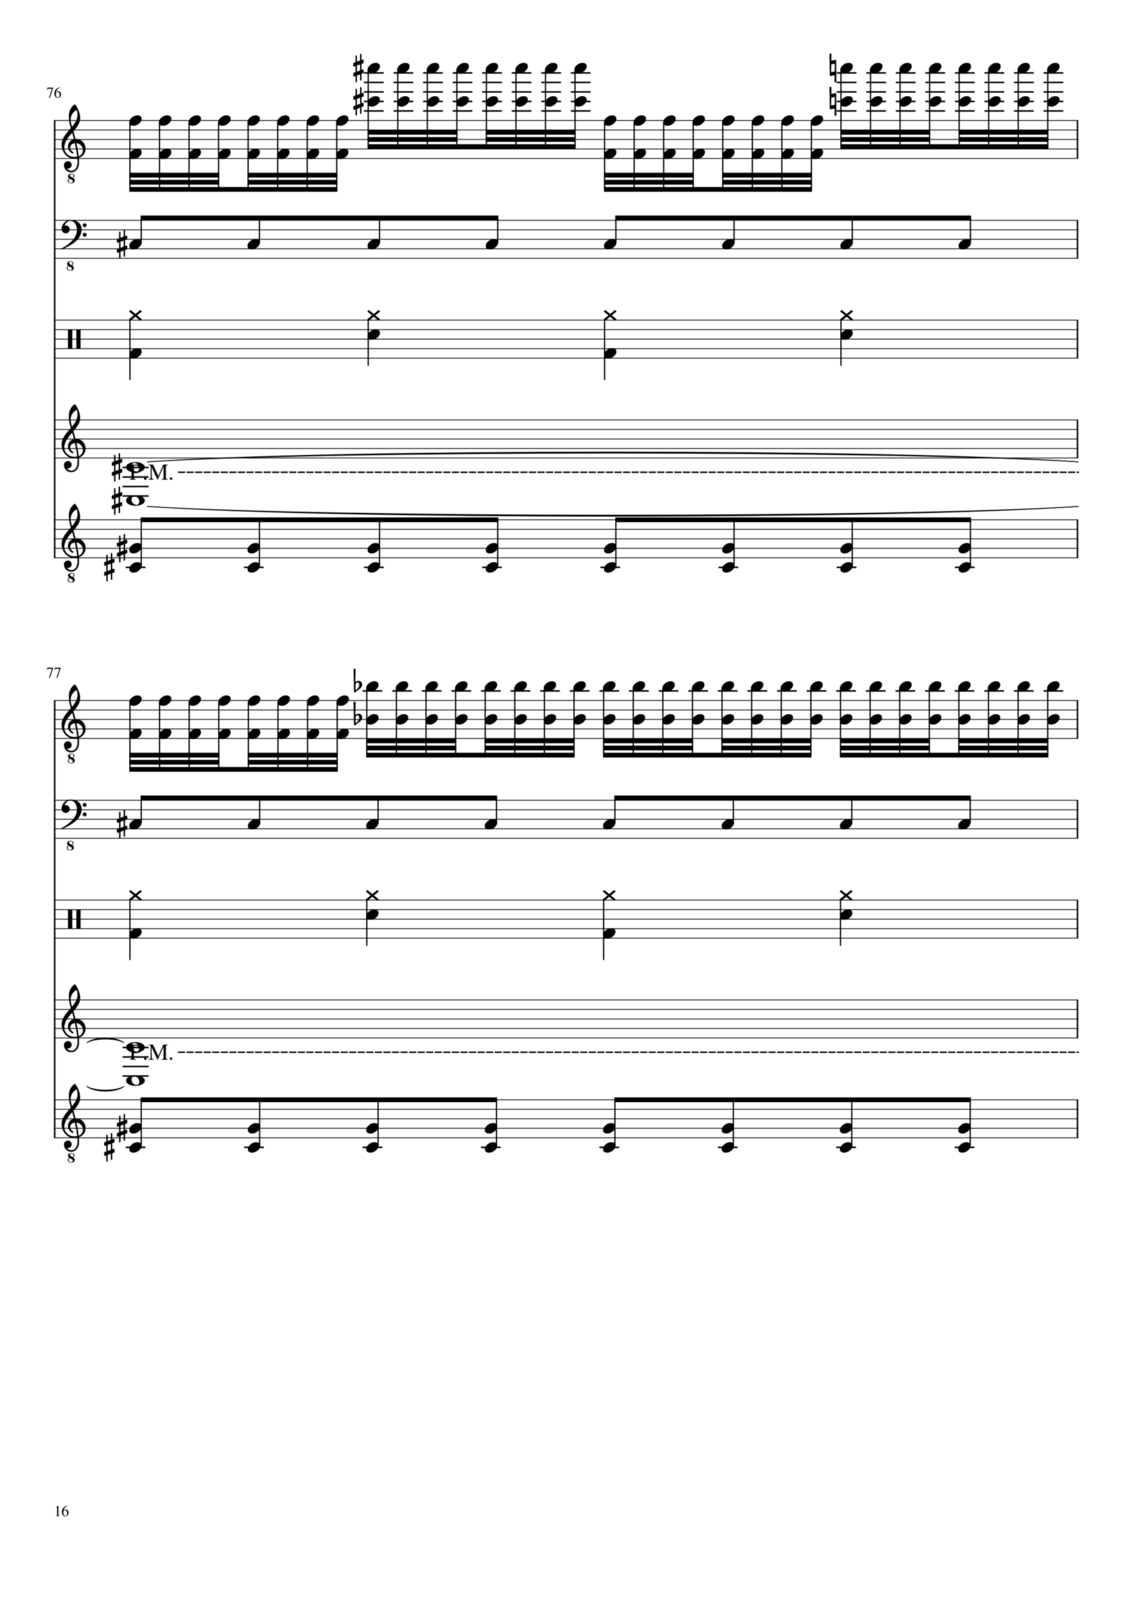 Vechnaya prizrachnaya vstrechnaya slide, Image 16